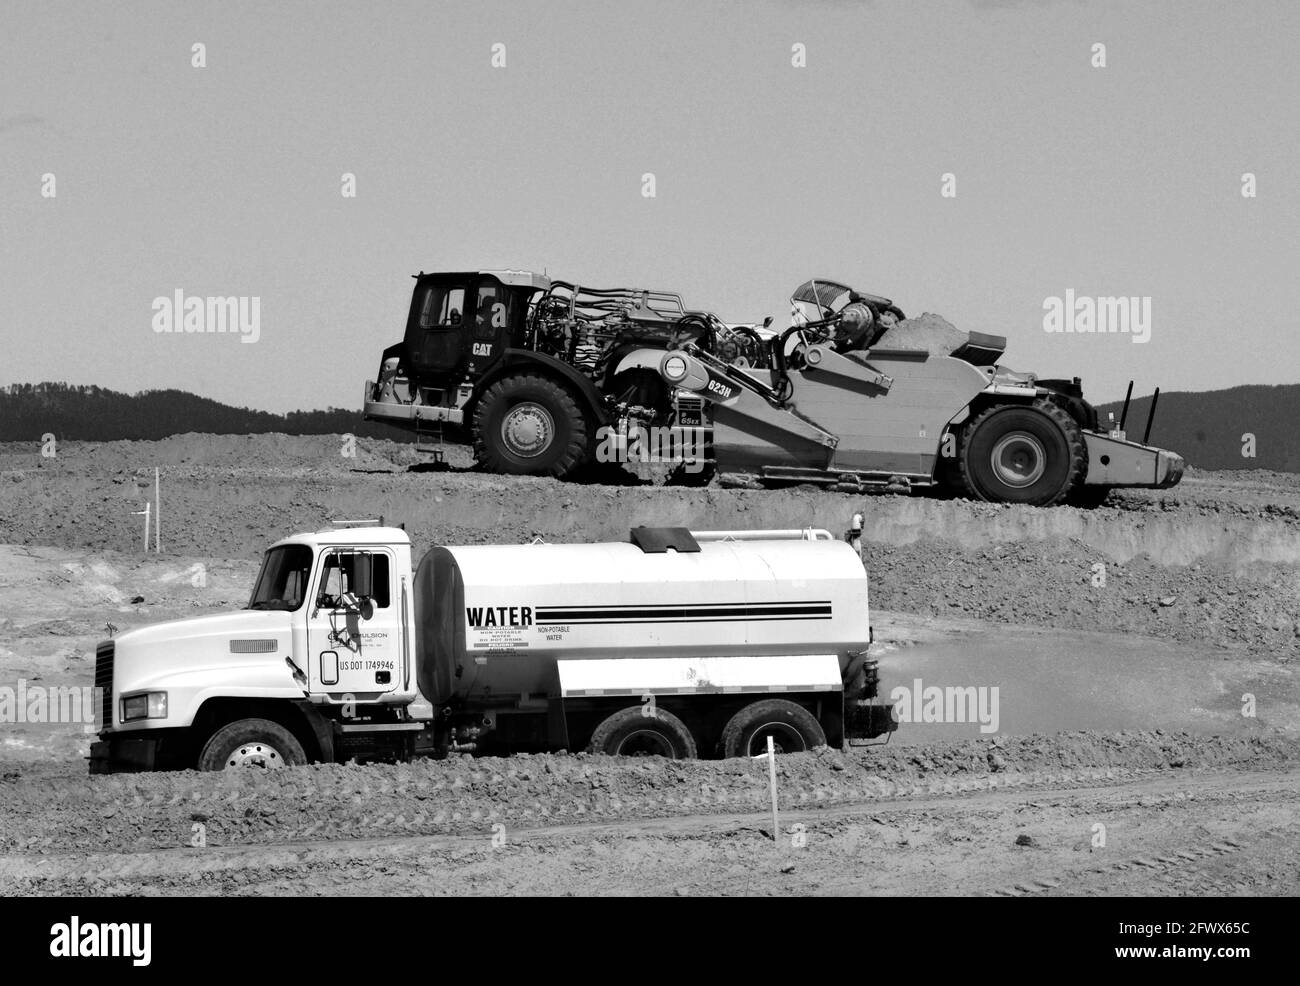 Les travailleurs de la construction de routes utilisent une décapeuse automotrice Caterpillar pour déplacer la saleté sur un chantier d'amélioration de la route à Santa Fe, au Nouveau-Mexique. Banque D'Images